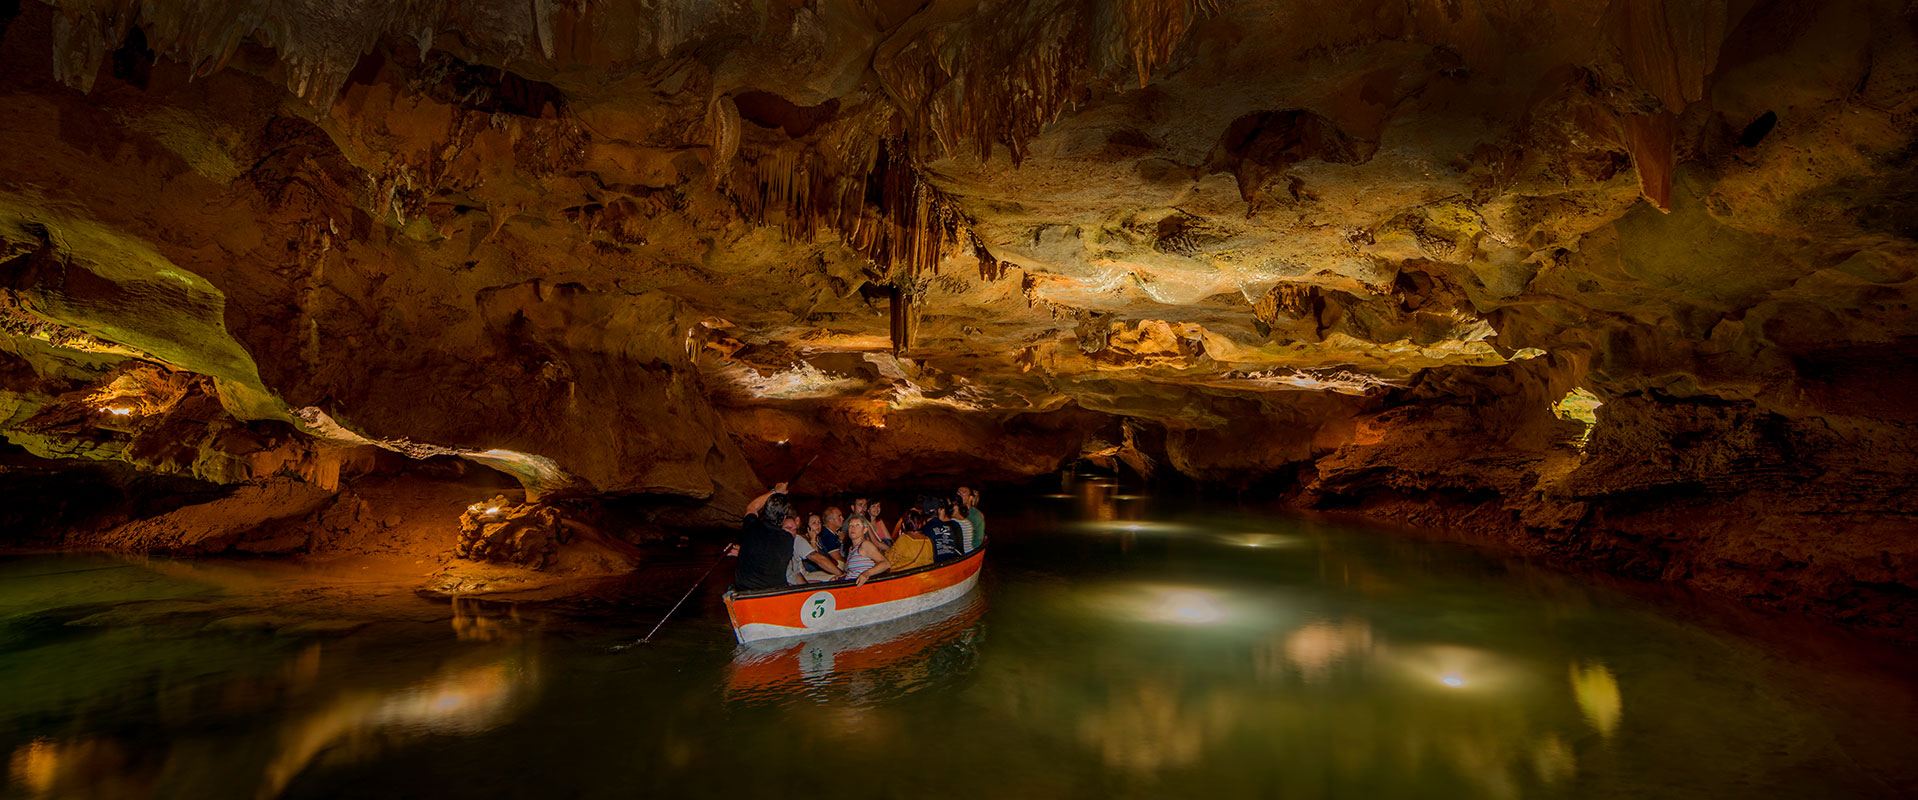 Resultado de imagen de cuevas de sant josep en la vall d'uixó